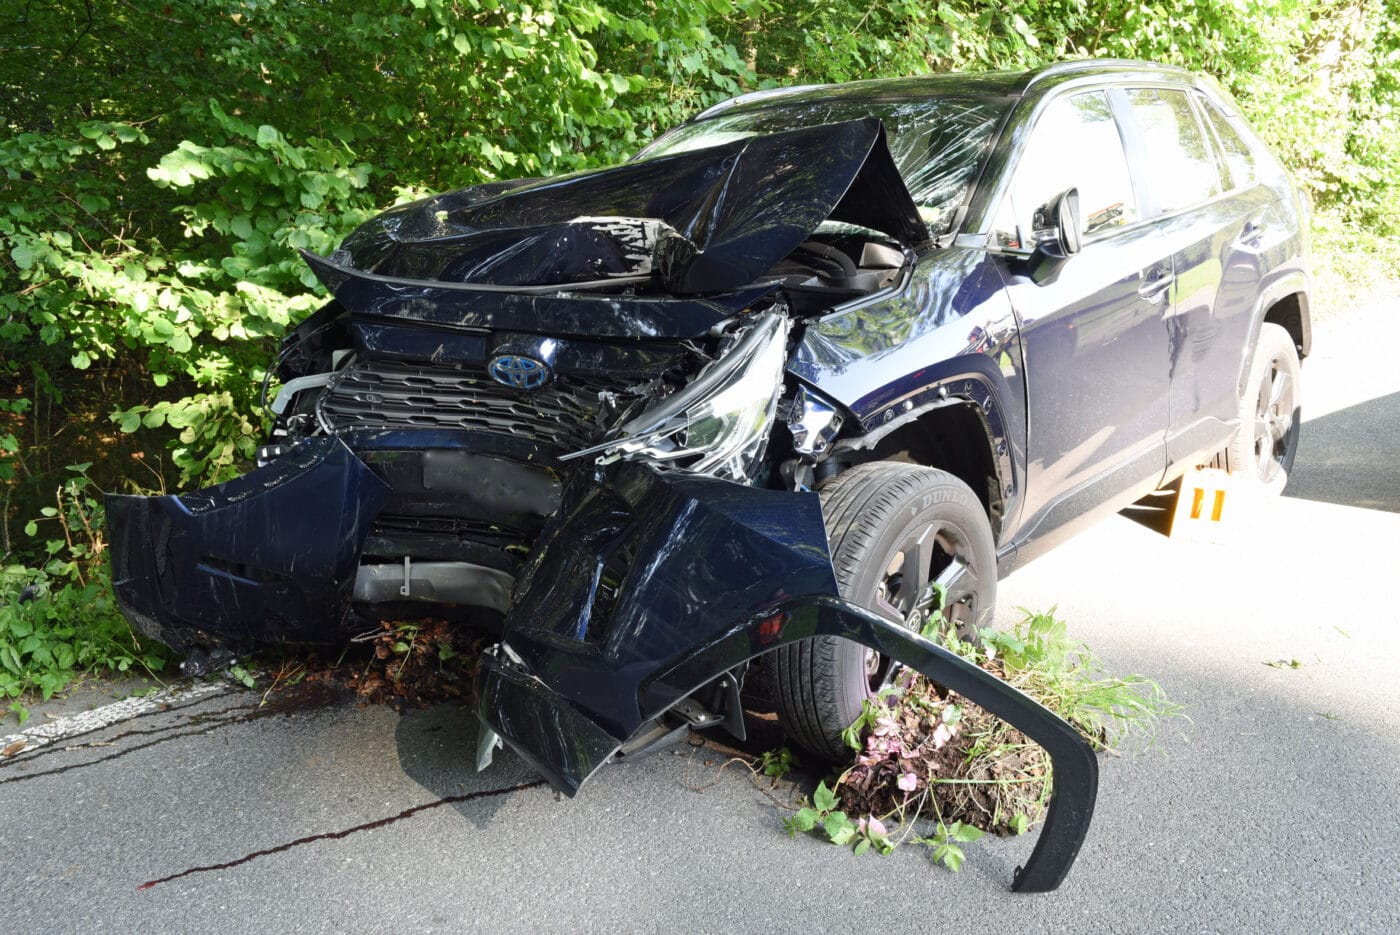 Autofahrerin bei Selbstunfall verletzt – Polizei sucht Zeugen